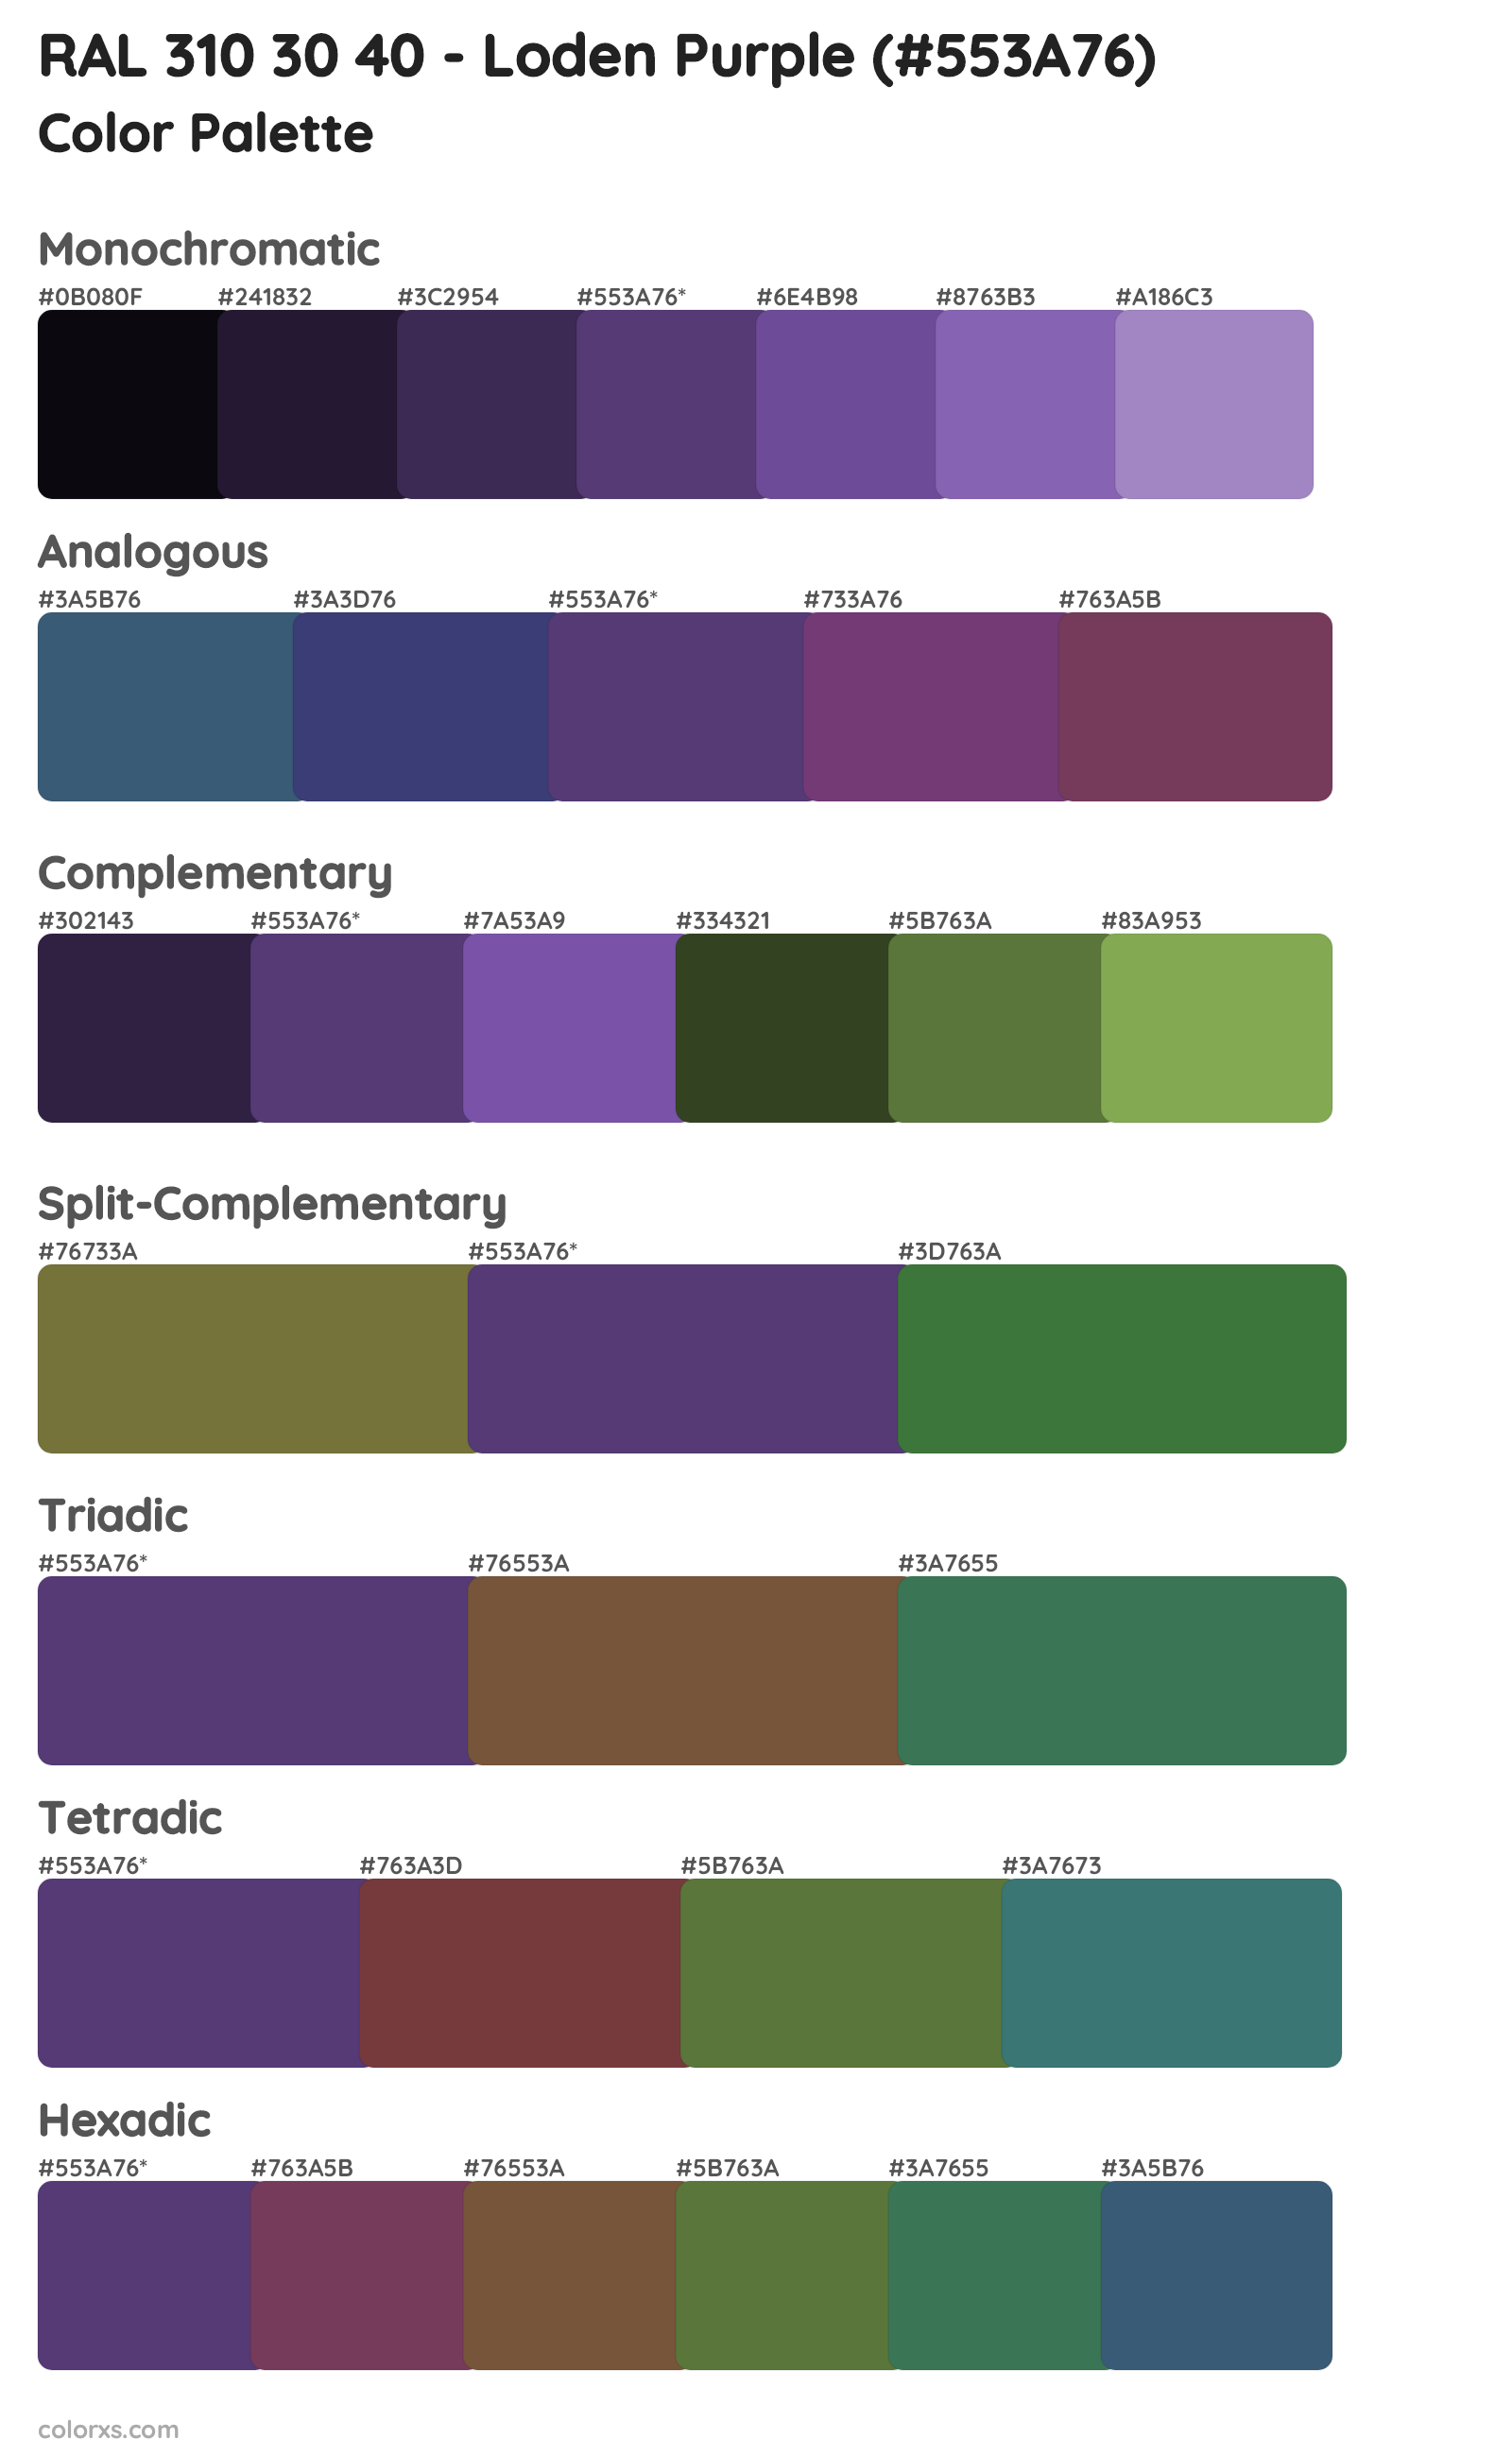 RAL 310 30 40 - Loden Purple Color Scheme Palettes